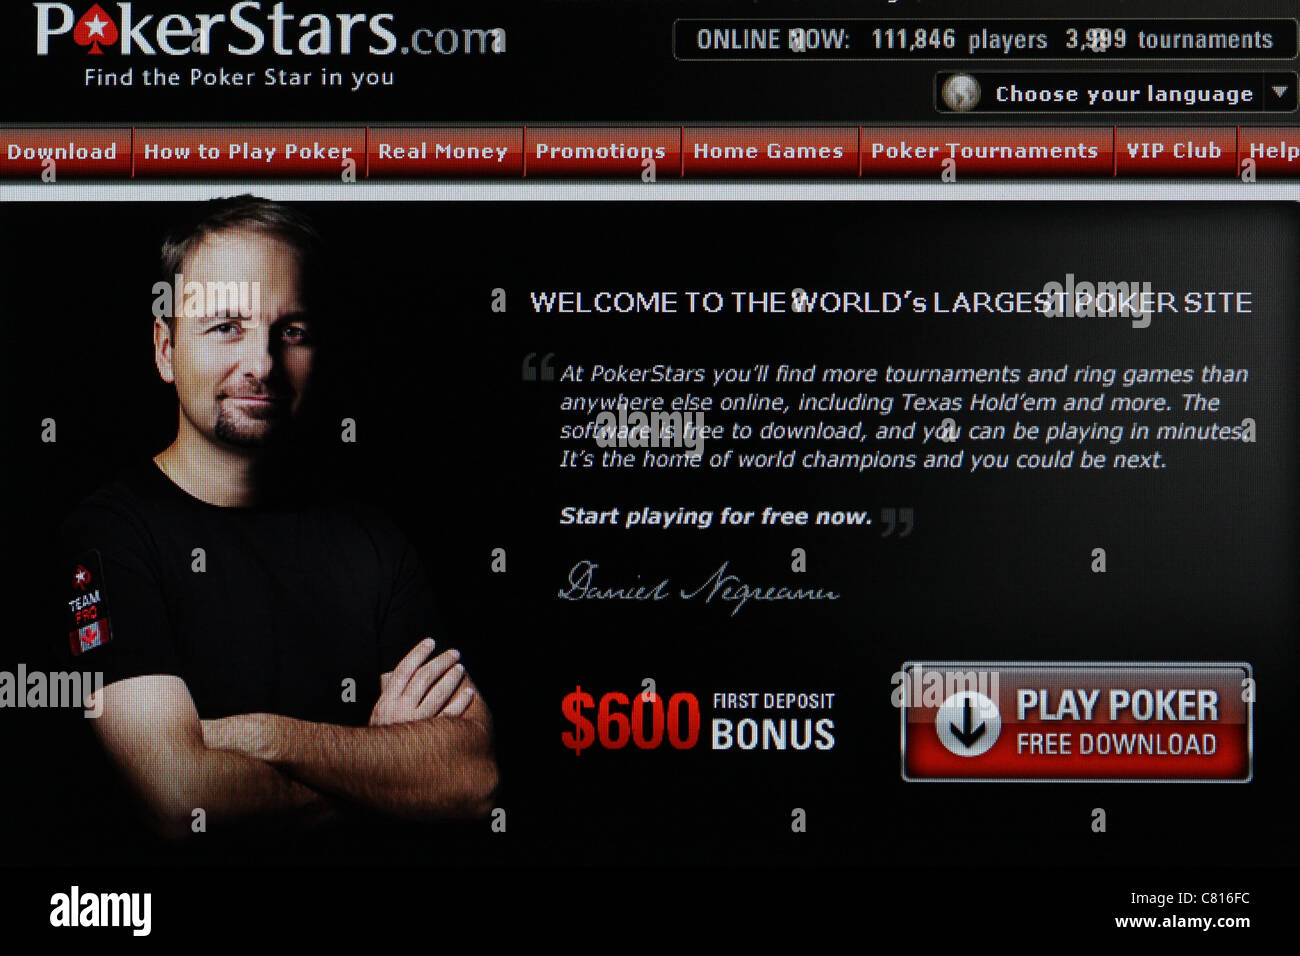 poker stars website